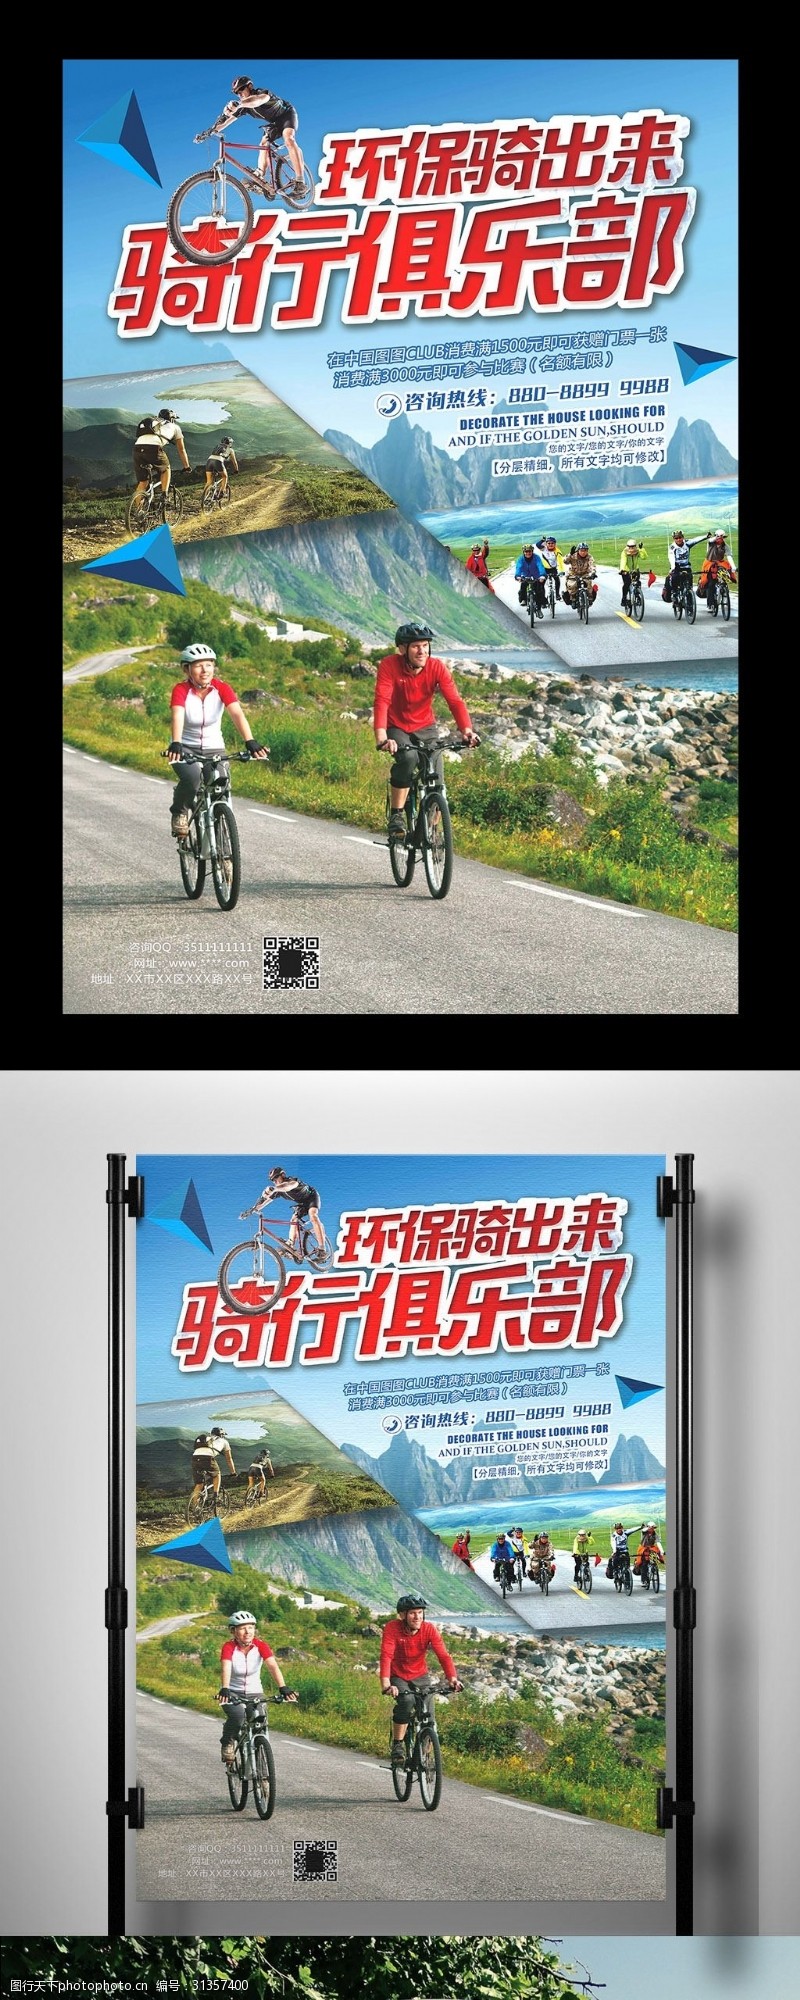 自行车比赛山地自行车骑行俱乐部海报